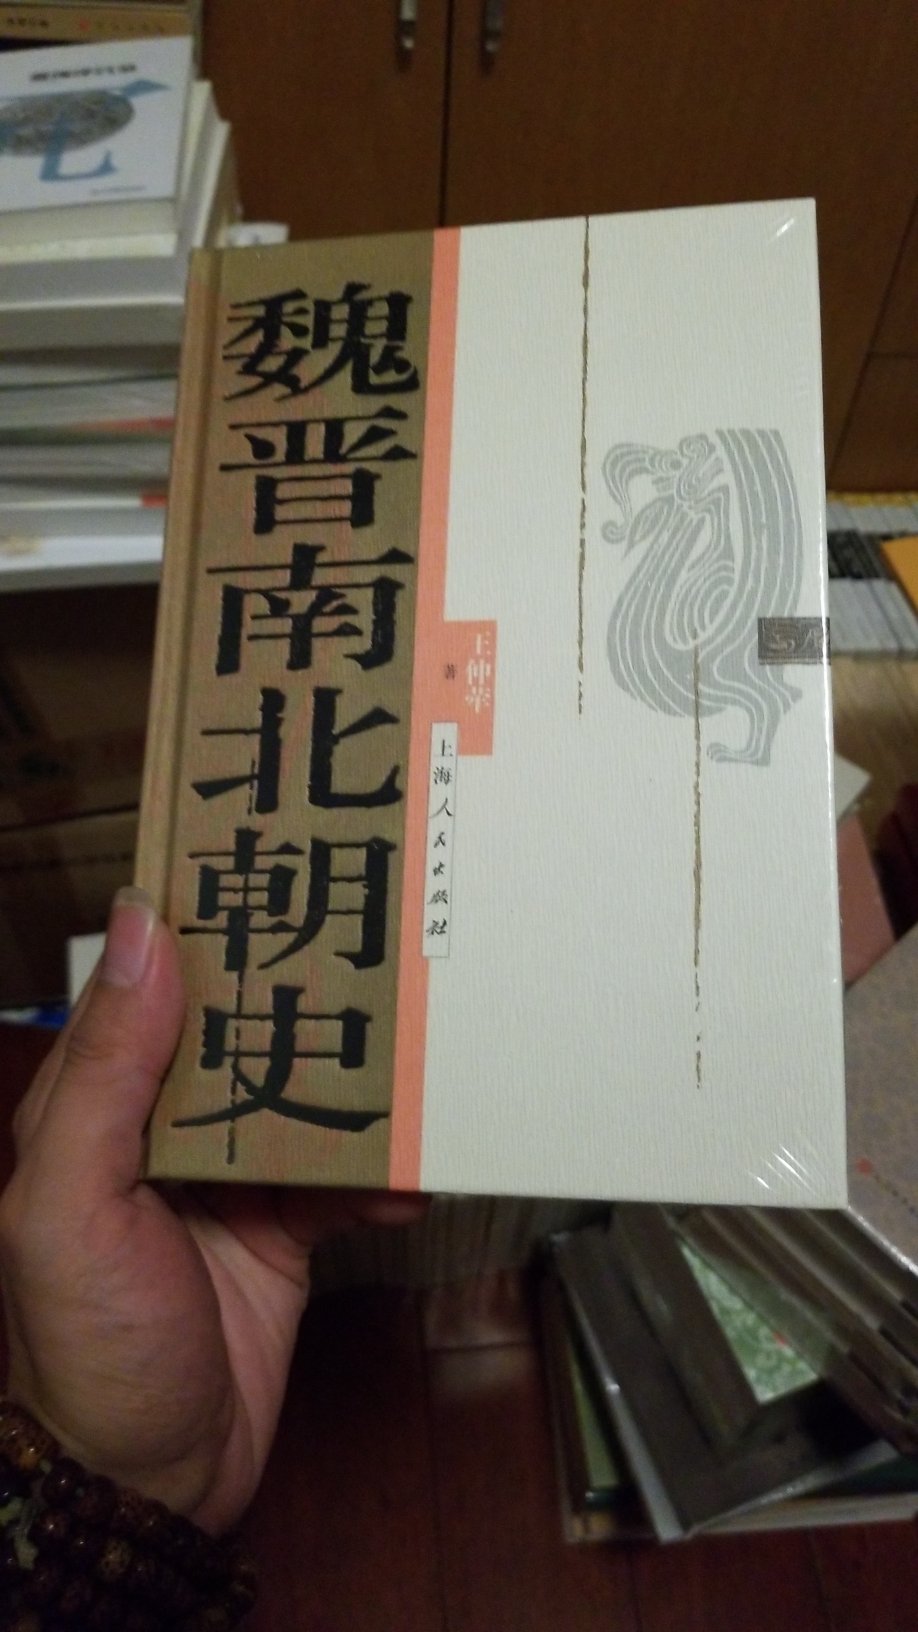 中华书局繁体竖排的王仲犖全集这本已经绝版了。迫不得及只能买这本，听说可以和陈寅恪对照着看。全是相反的结论！？